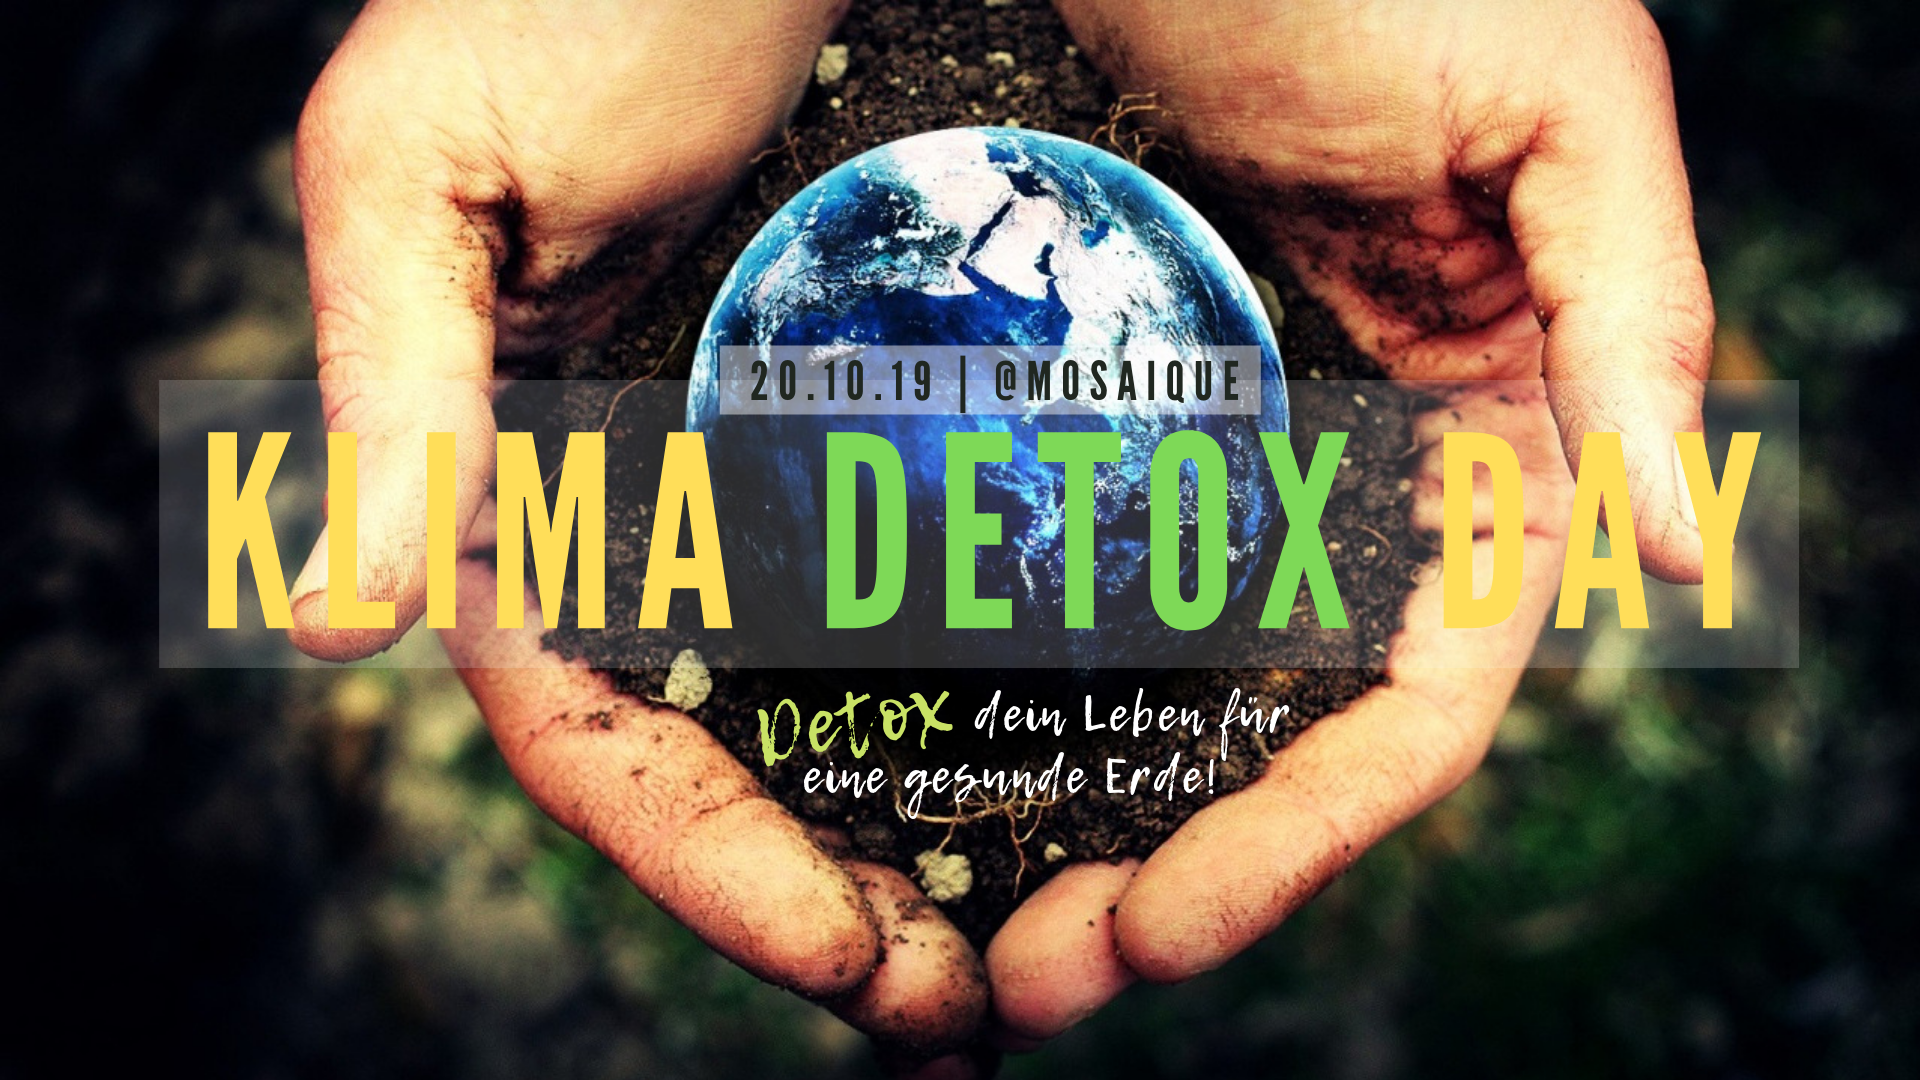 Klima Detox Day – „Detox dein Leben für eine gesunde Erde!“